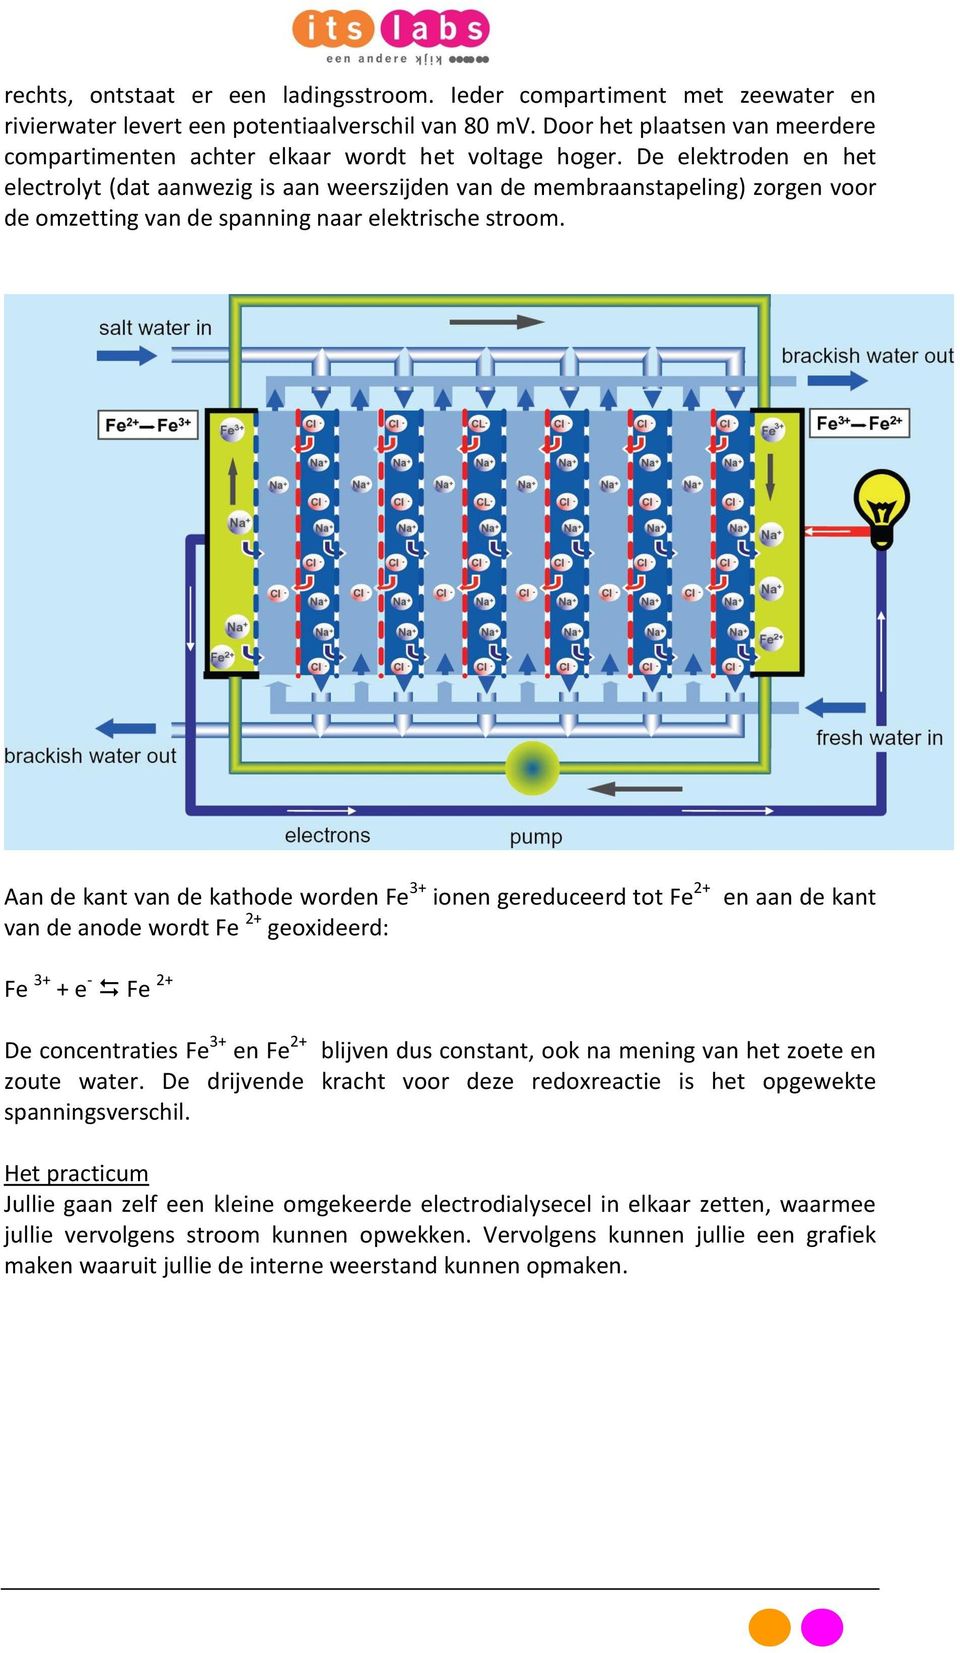 De elektroden en het electrolyt (dat aanwezig is aan weerszijden van de membraanstapeling) zorgen voor de omzetting van de spanning naar elektrische stroom.